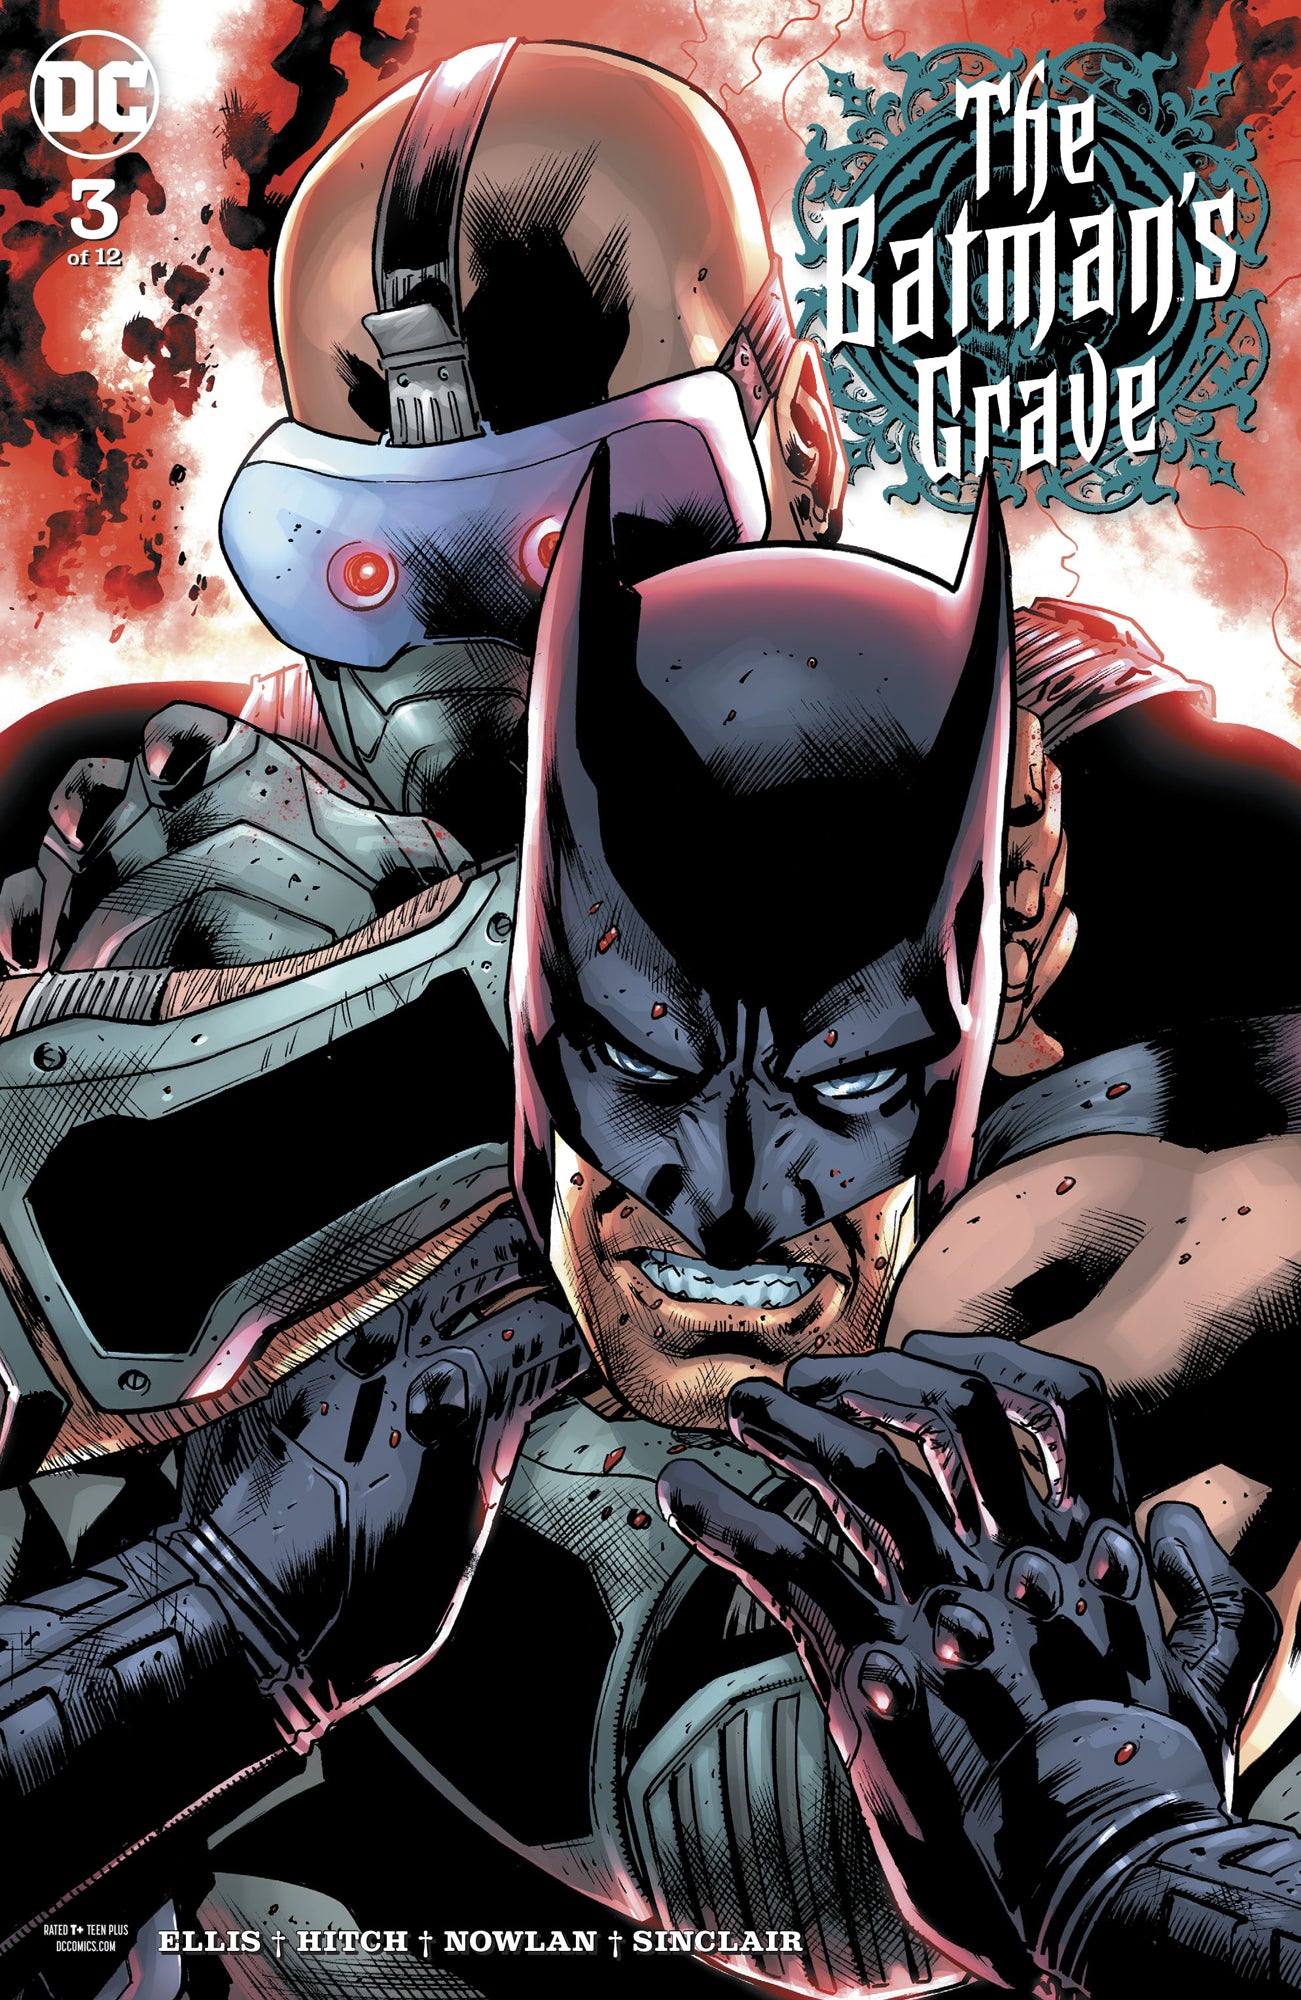 BATMANS GRAVE #3 (OF 12)